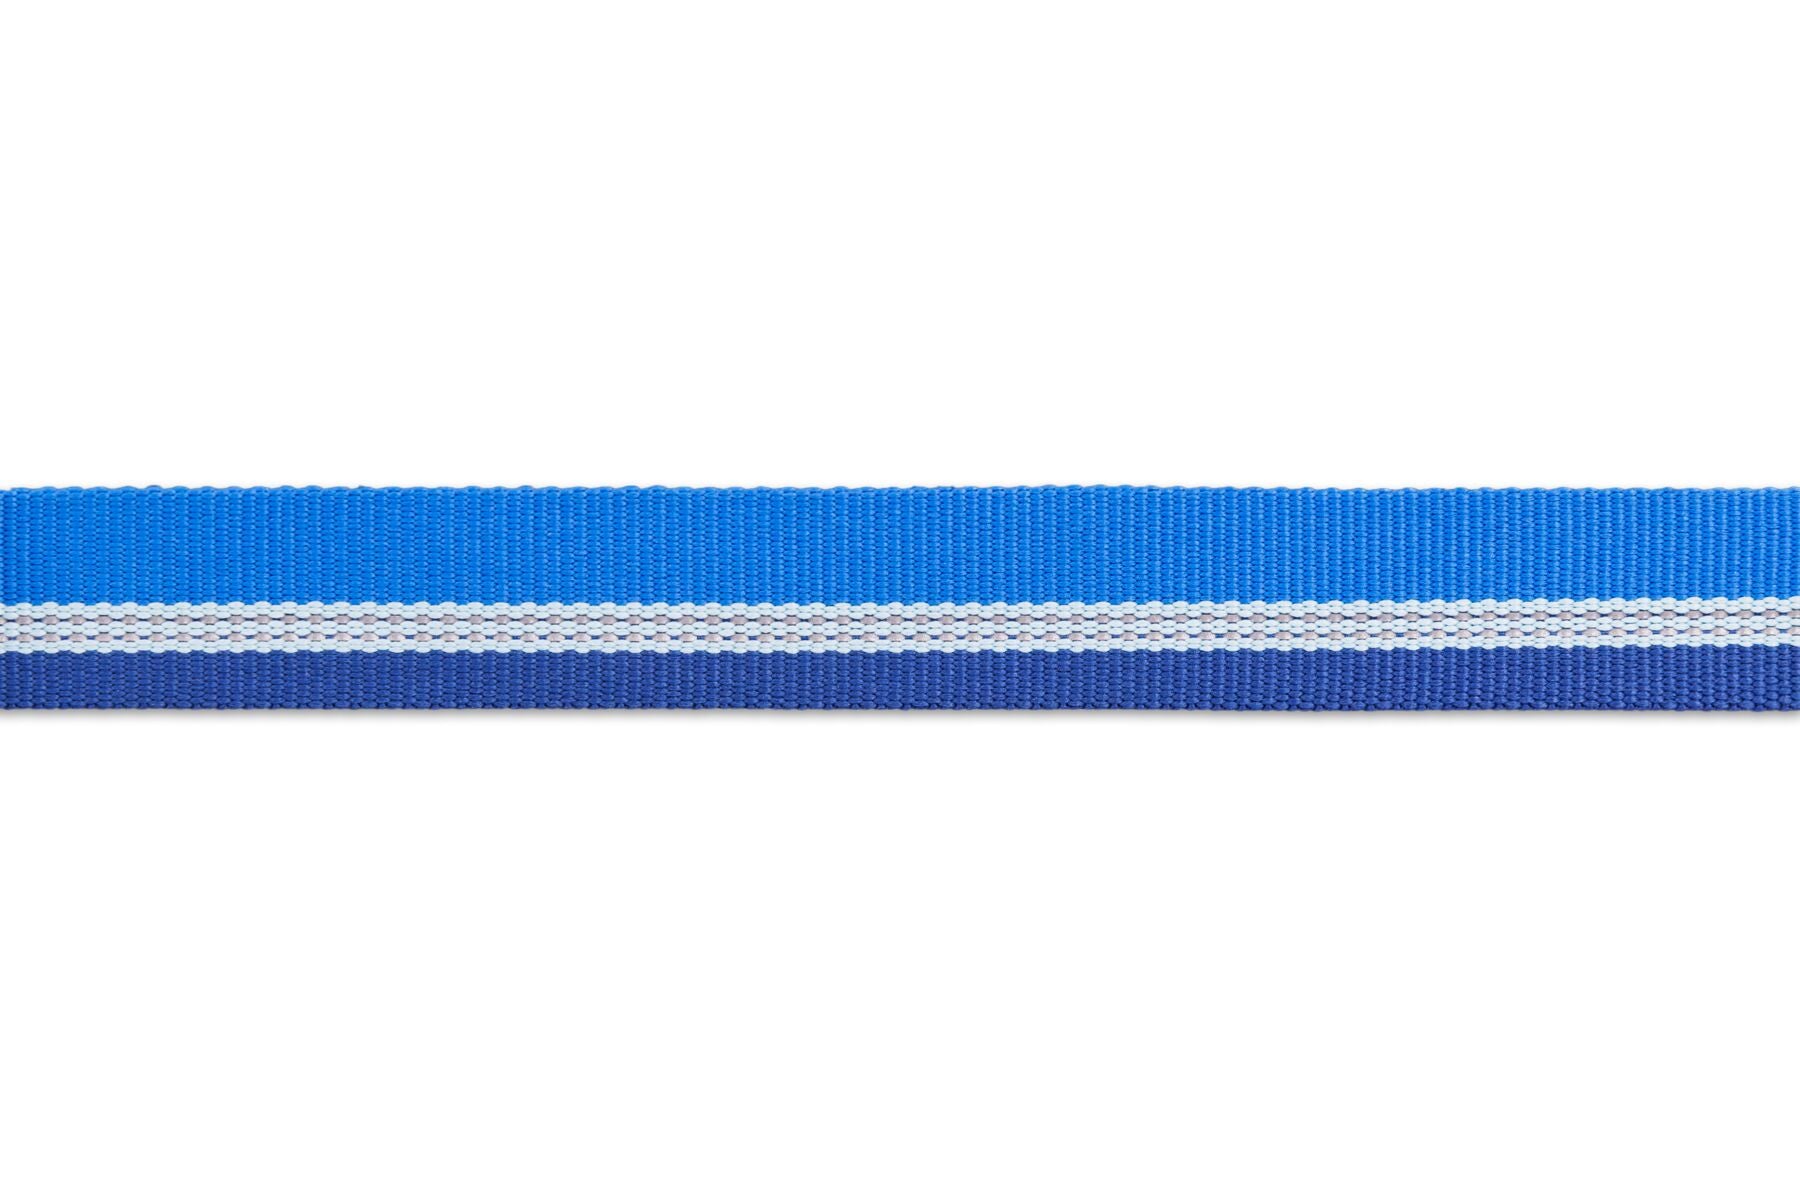 Collar para Perros Modelo Chain Reaction Azul (Blue Pool) - Ruffwear